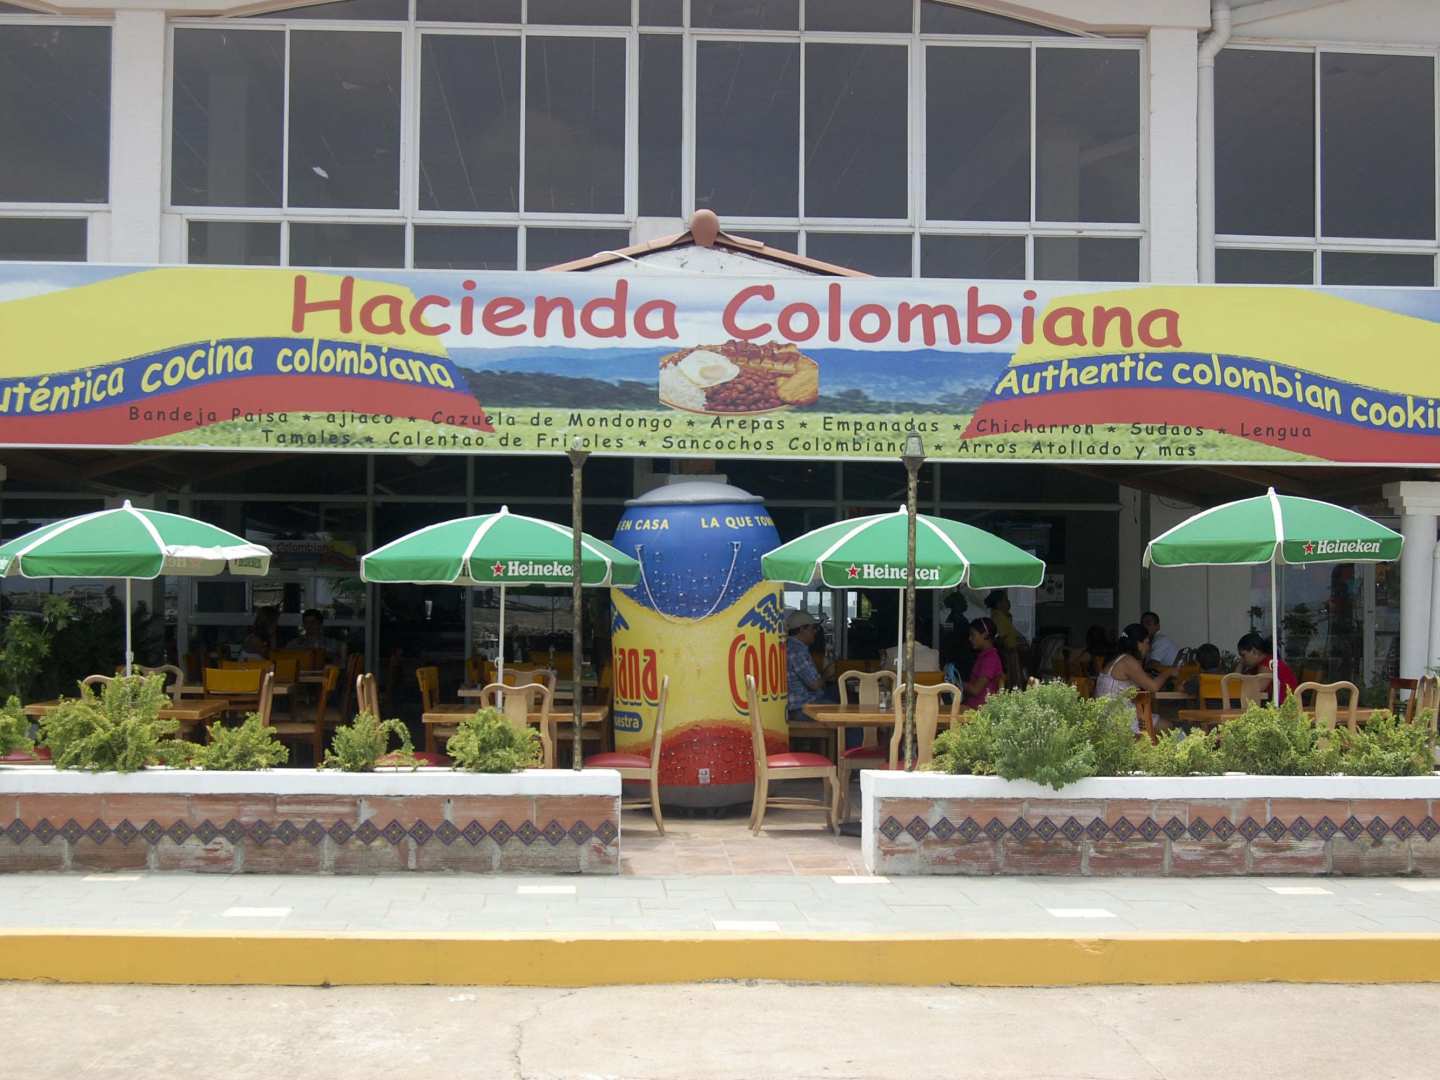 La Hacienda Colombiana